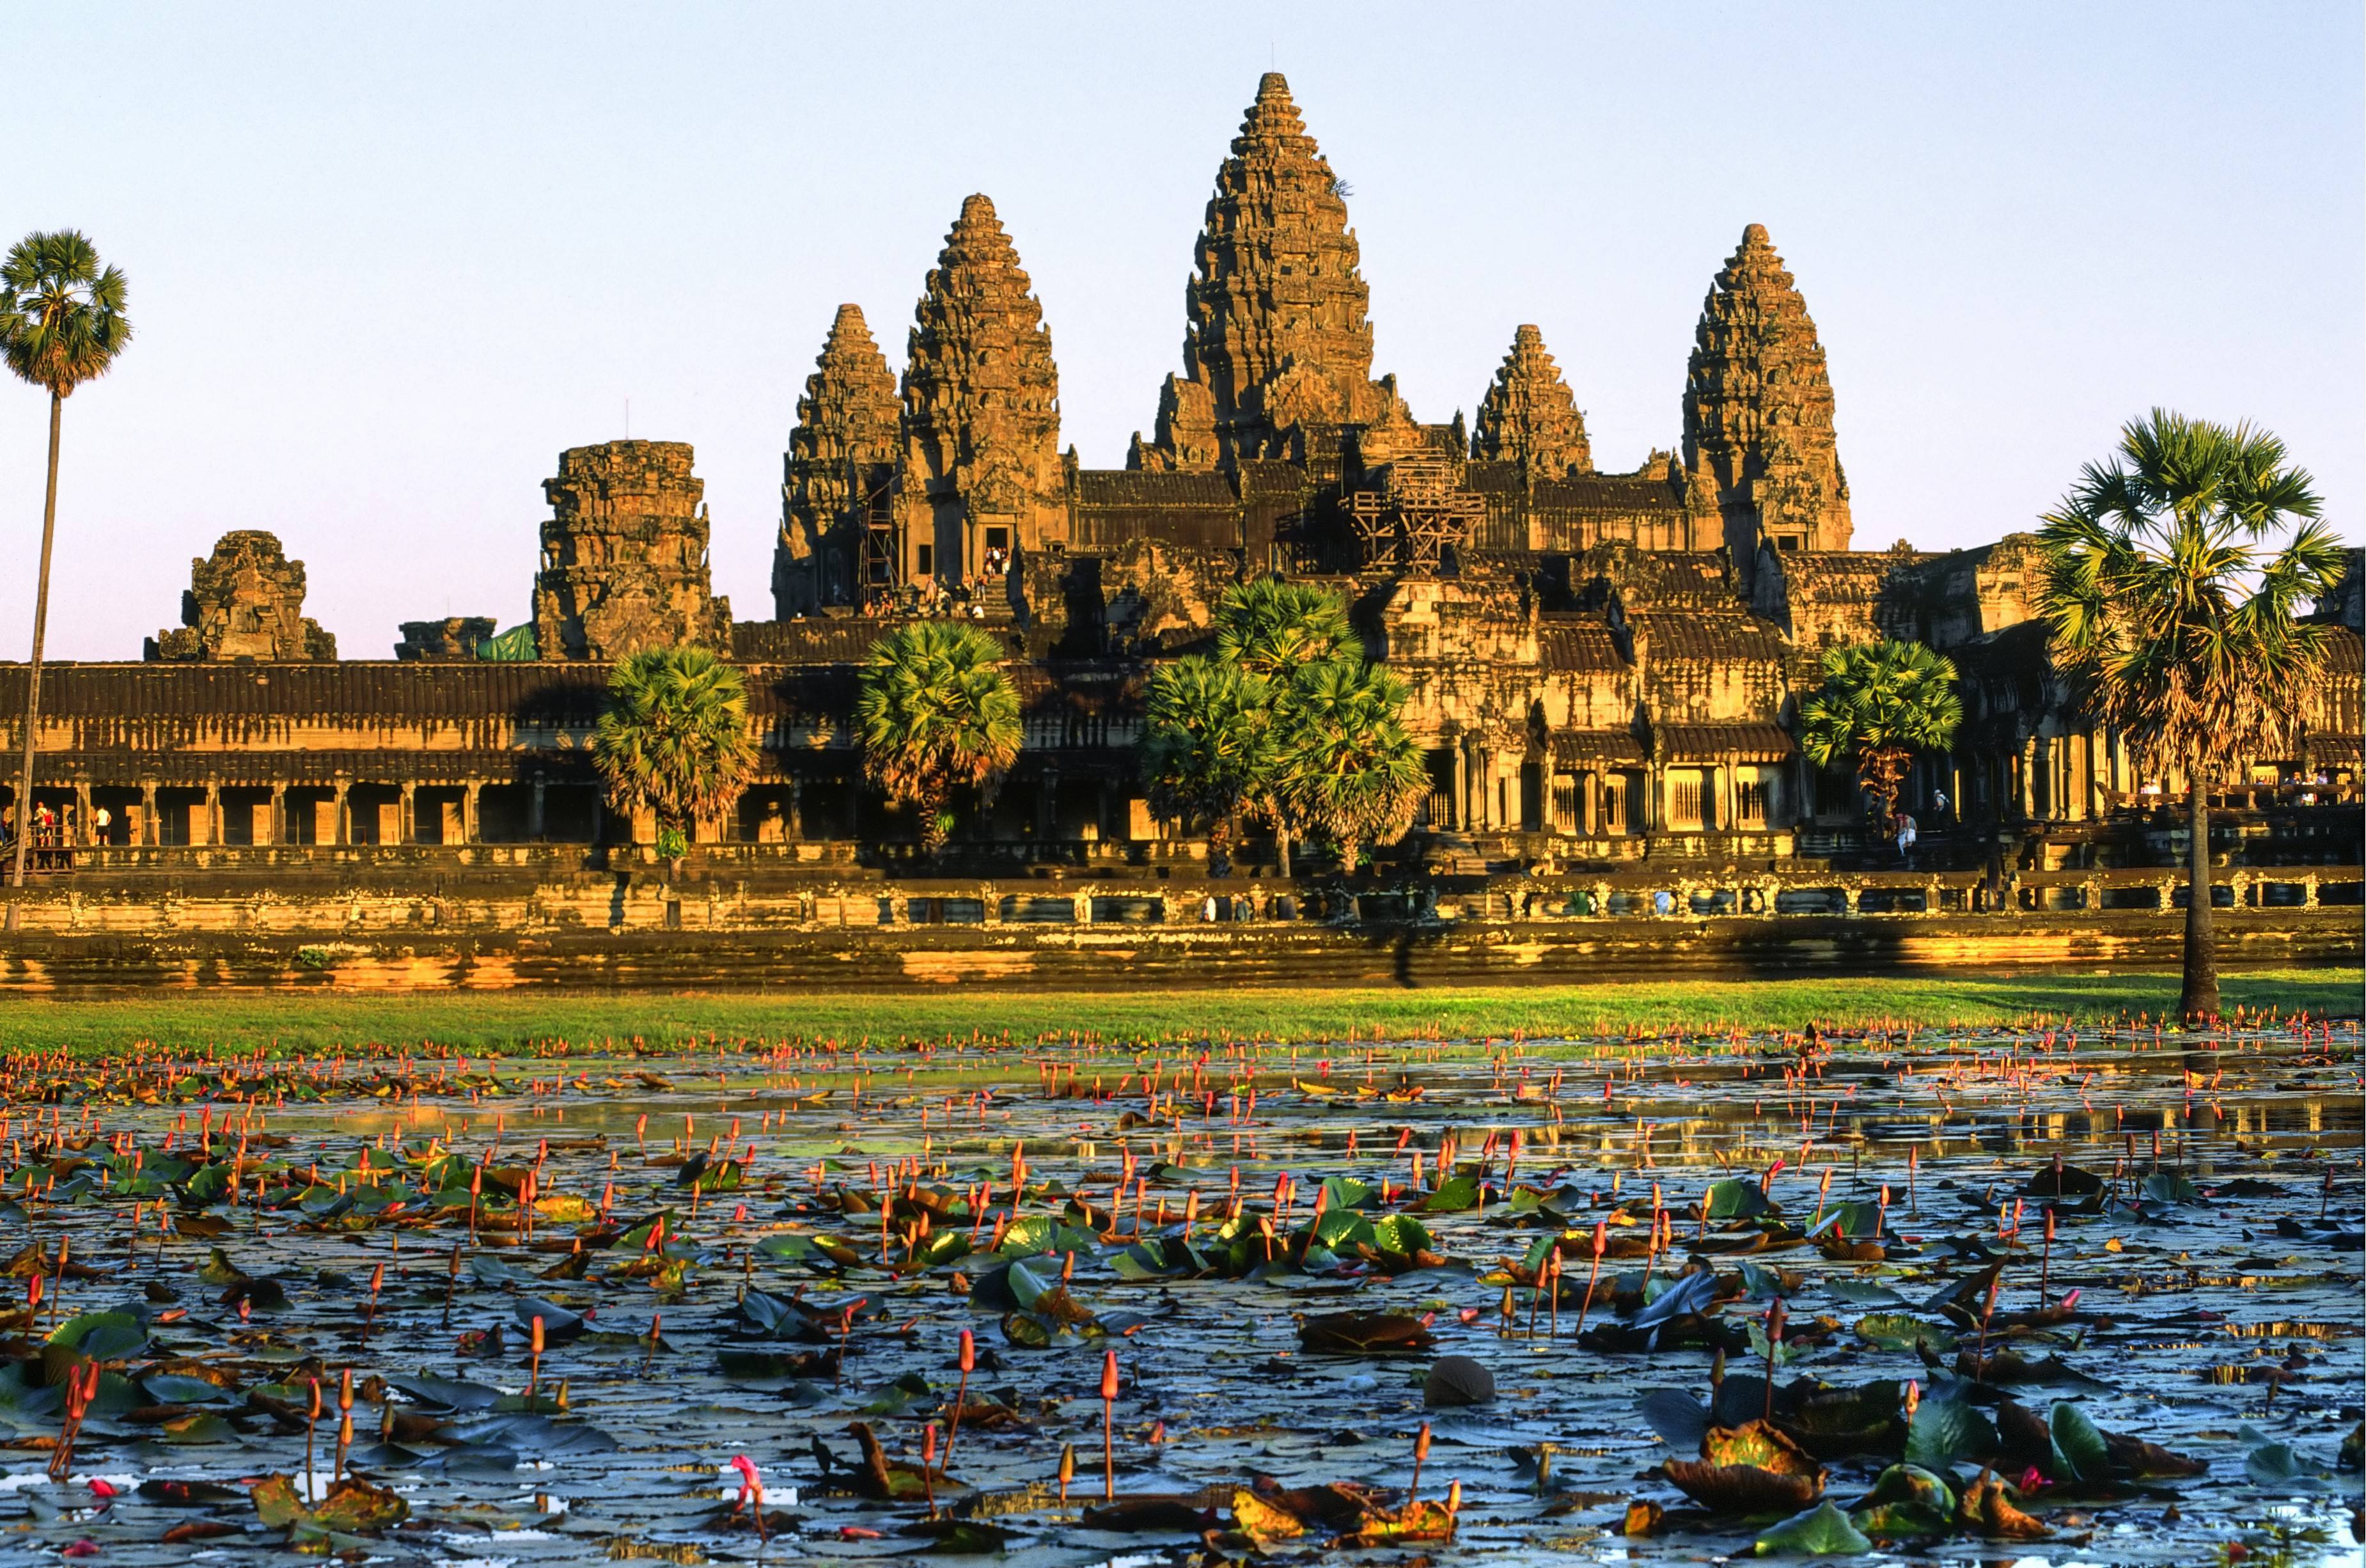 Ангкор ват в камбодже - храмовый комплекс золотого века кхмерской империи | angkor wat - paikea.ru